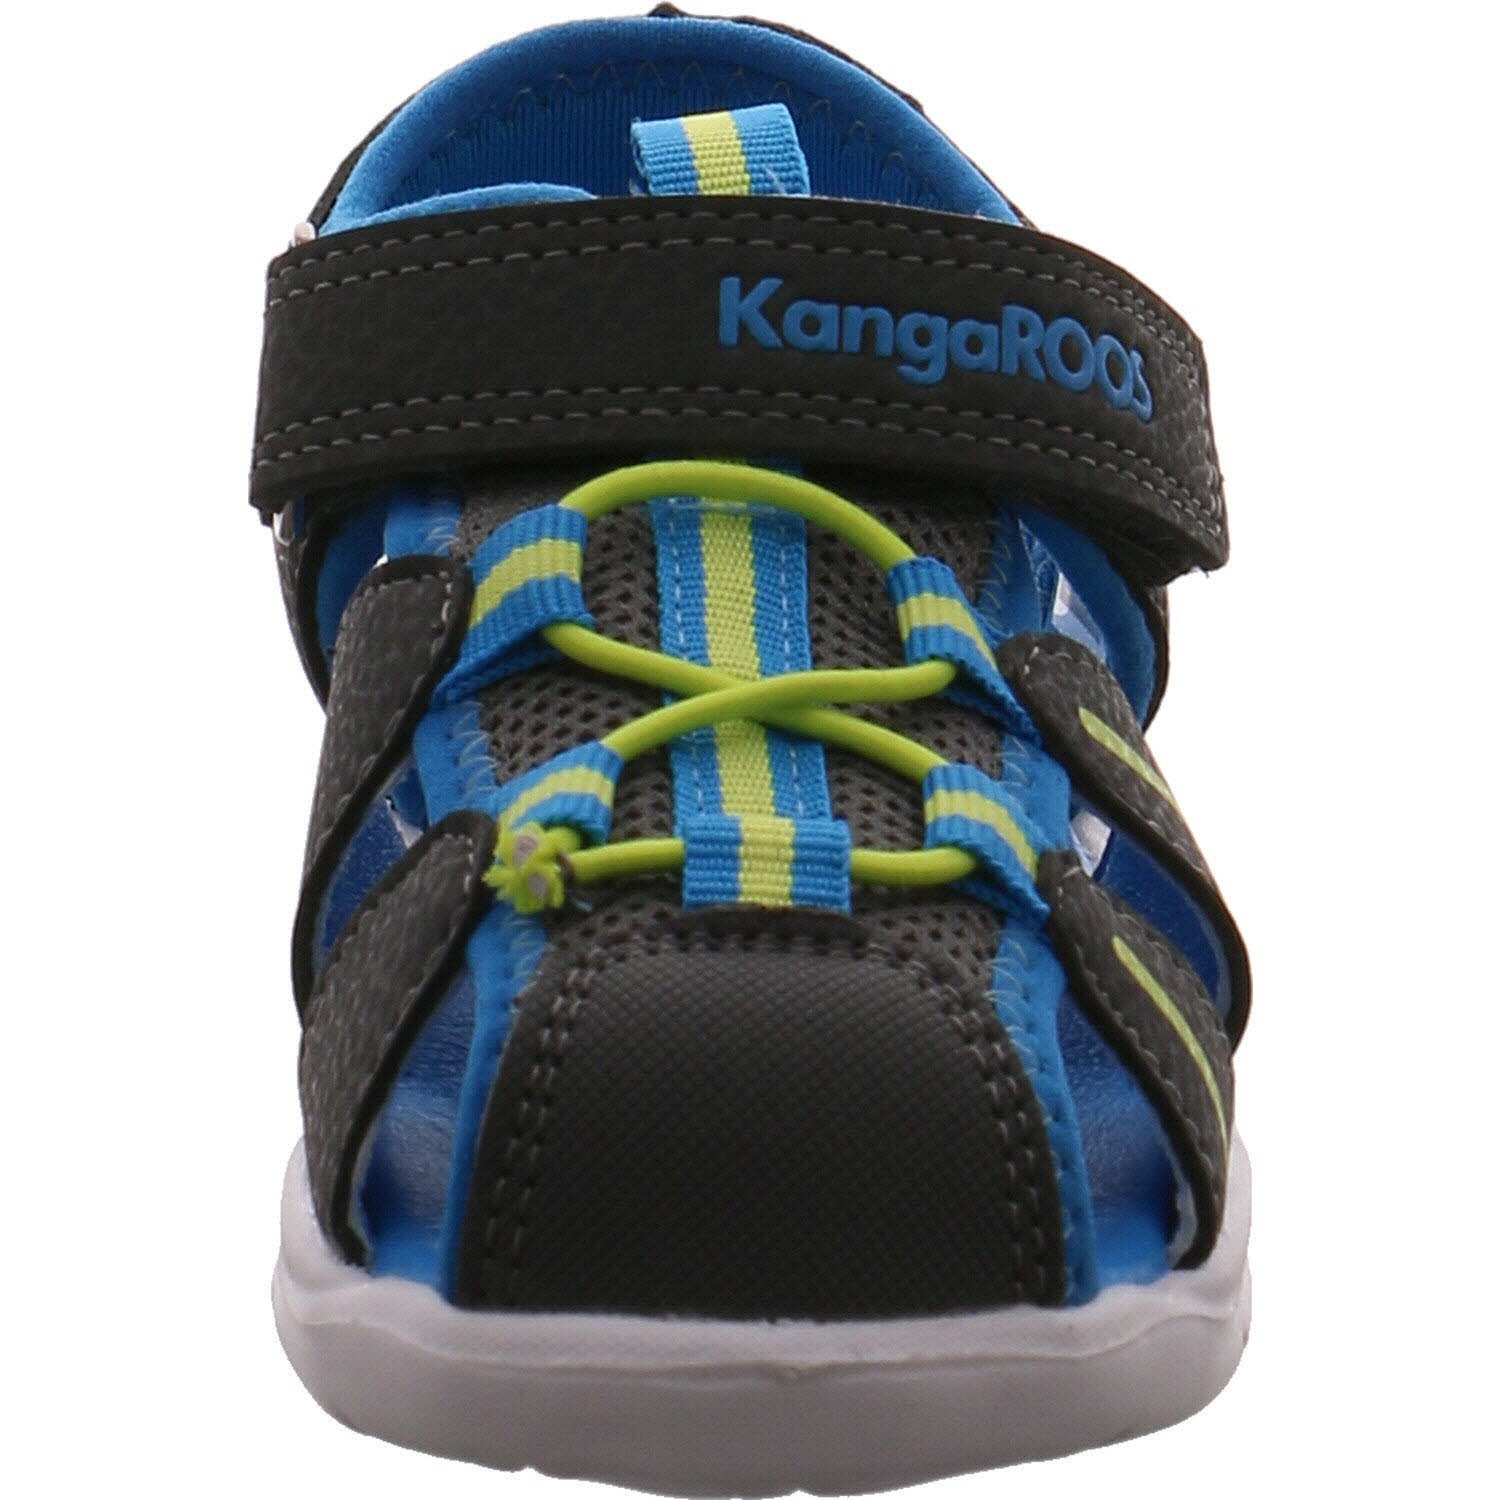 Sandale KangaROOS K-Grobi